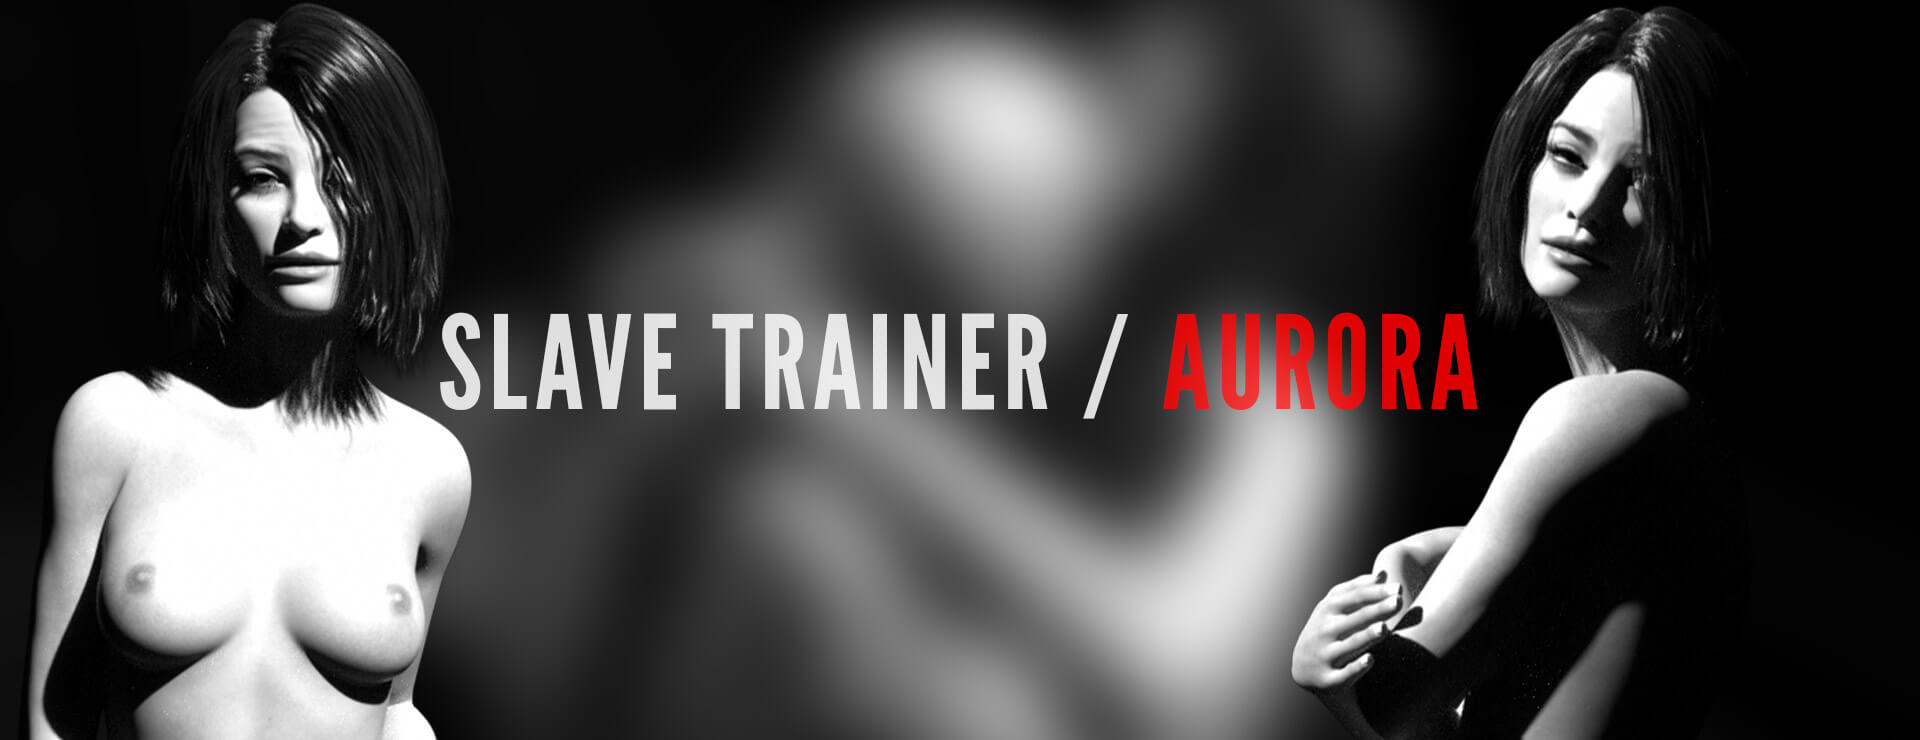 Slave Trainer Aurora - Simulation Game